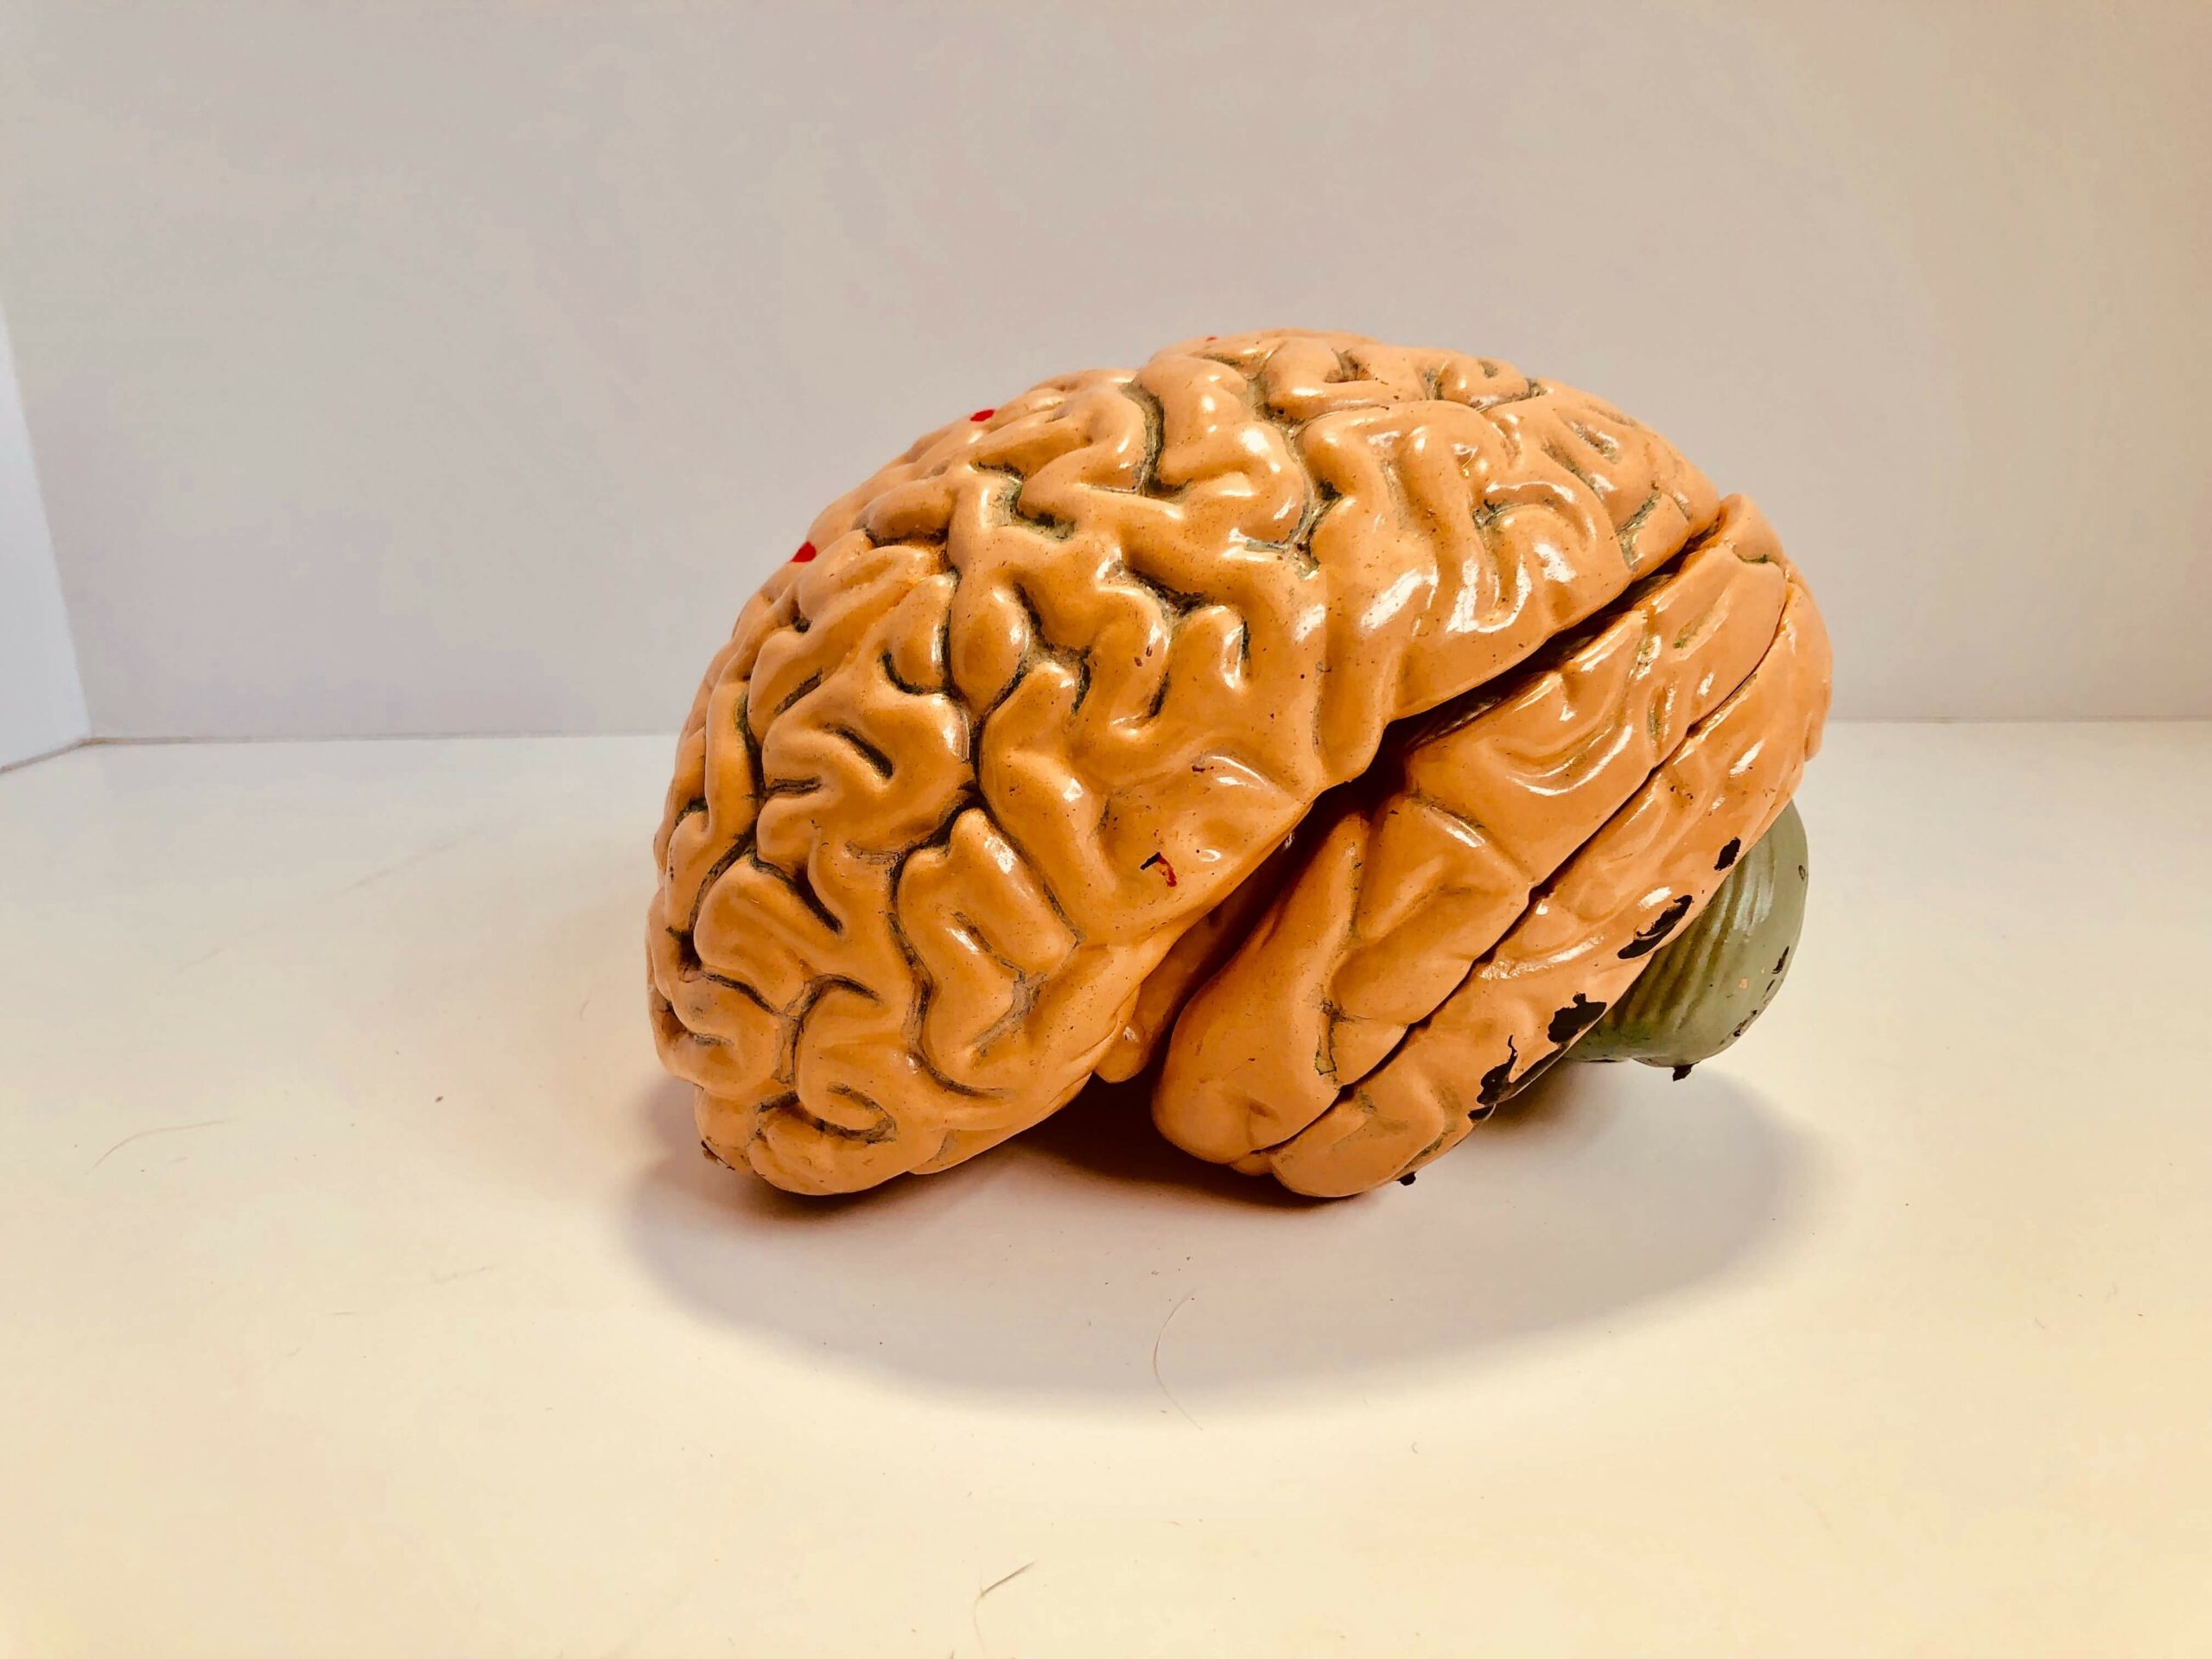 Model of a brain